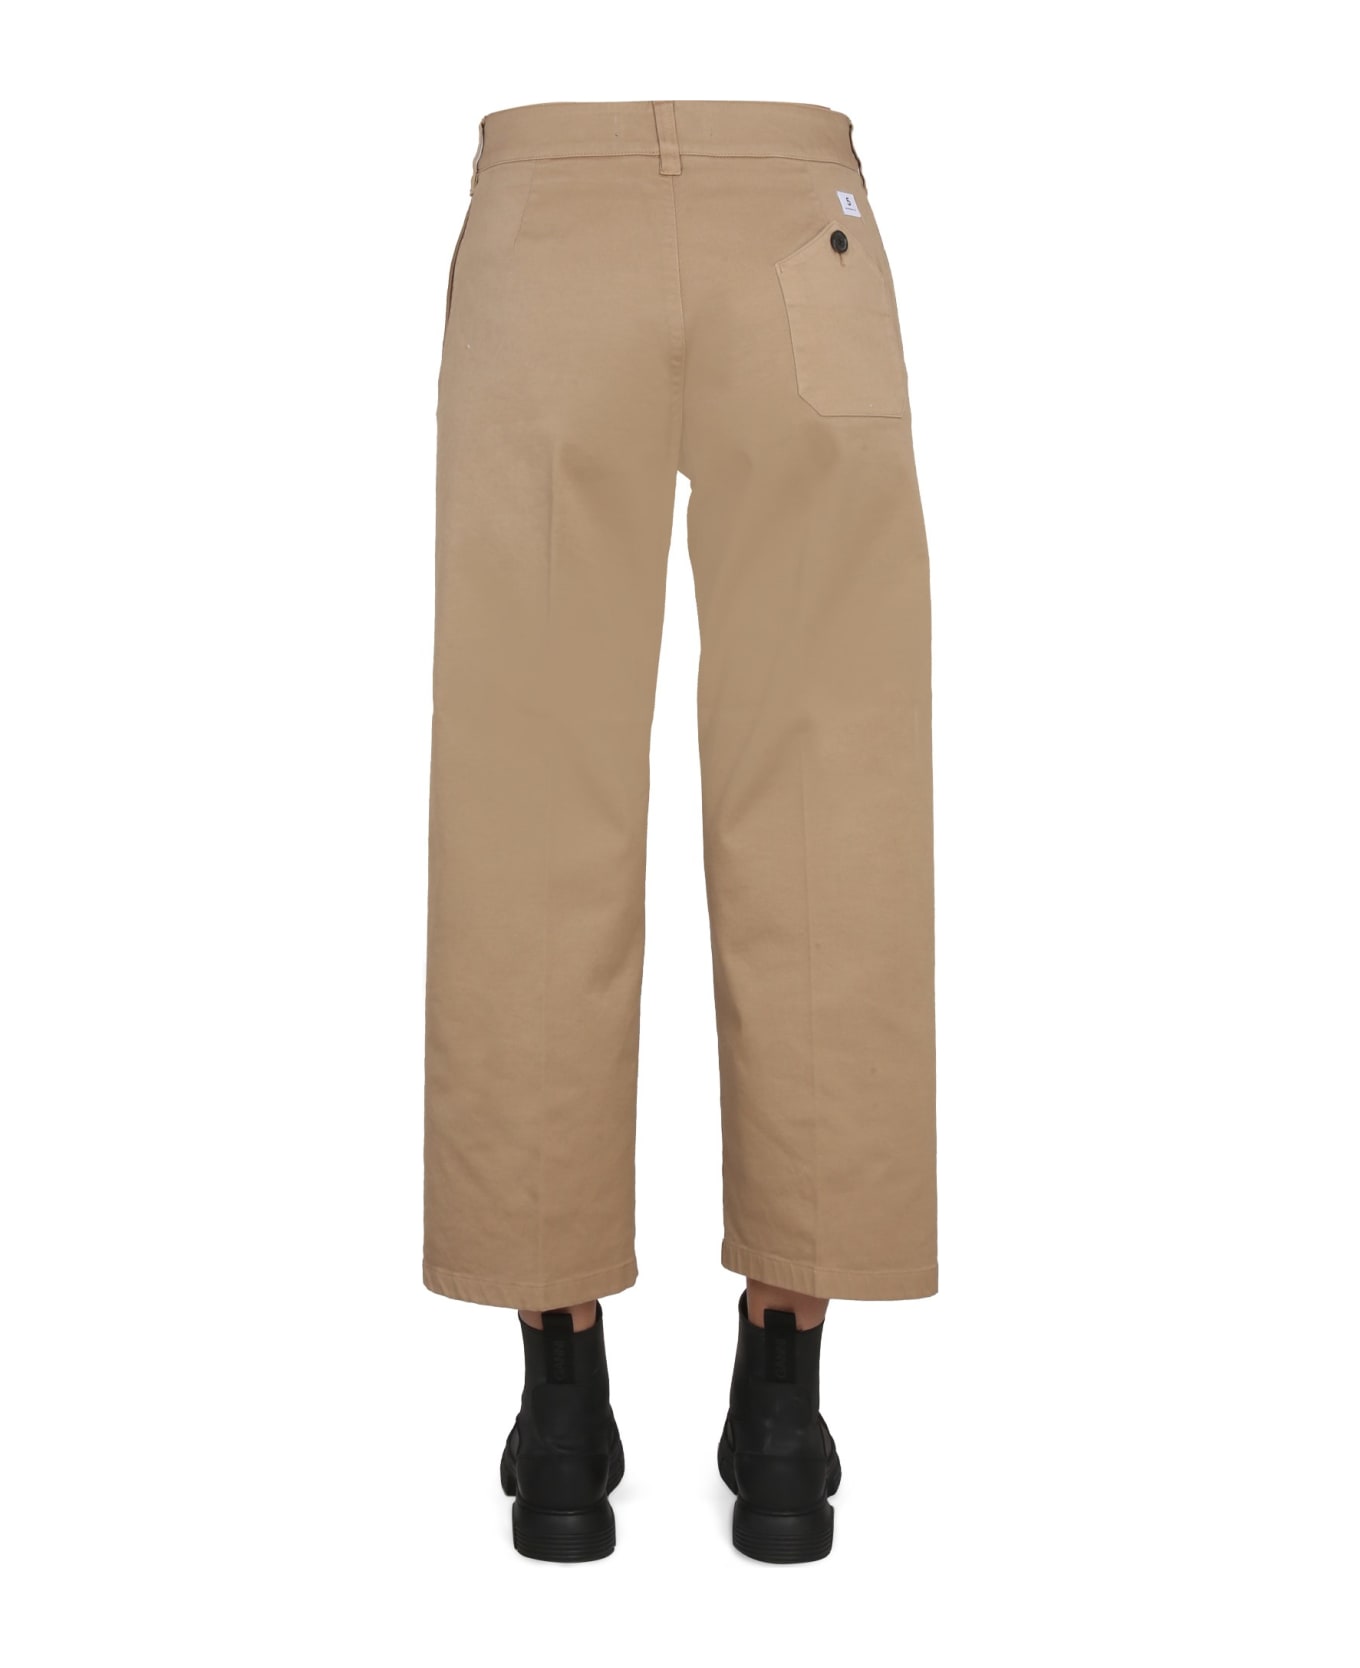 Department Five Cotton Pants - BEIGE